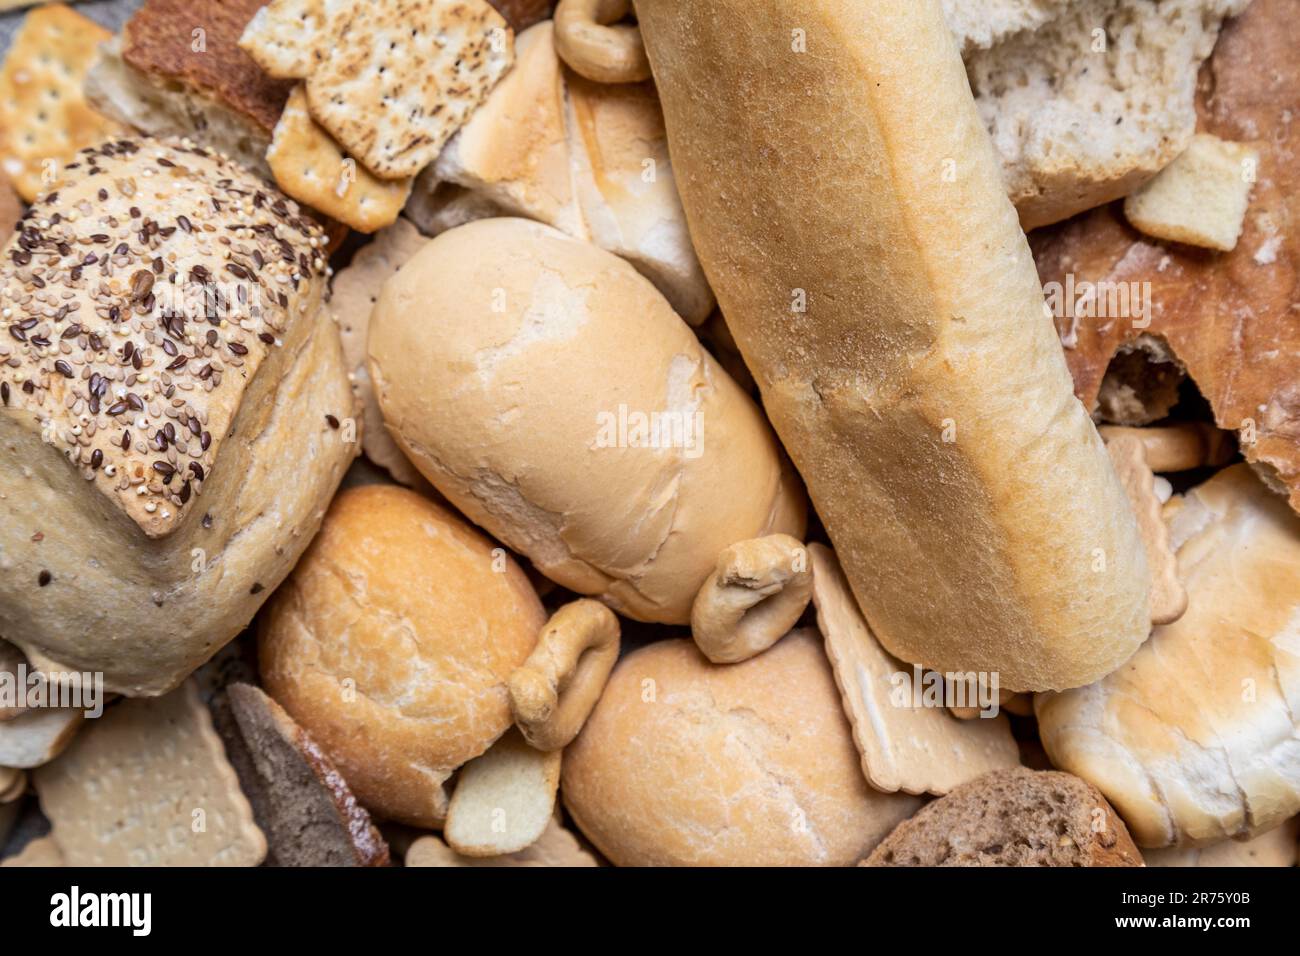 Italie, grande quantité de pain rassis dans différents formats, déchets alimentaires, nourriture non consommée Banque D'Images